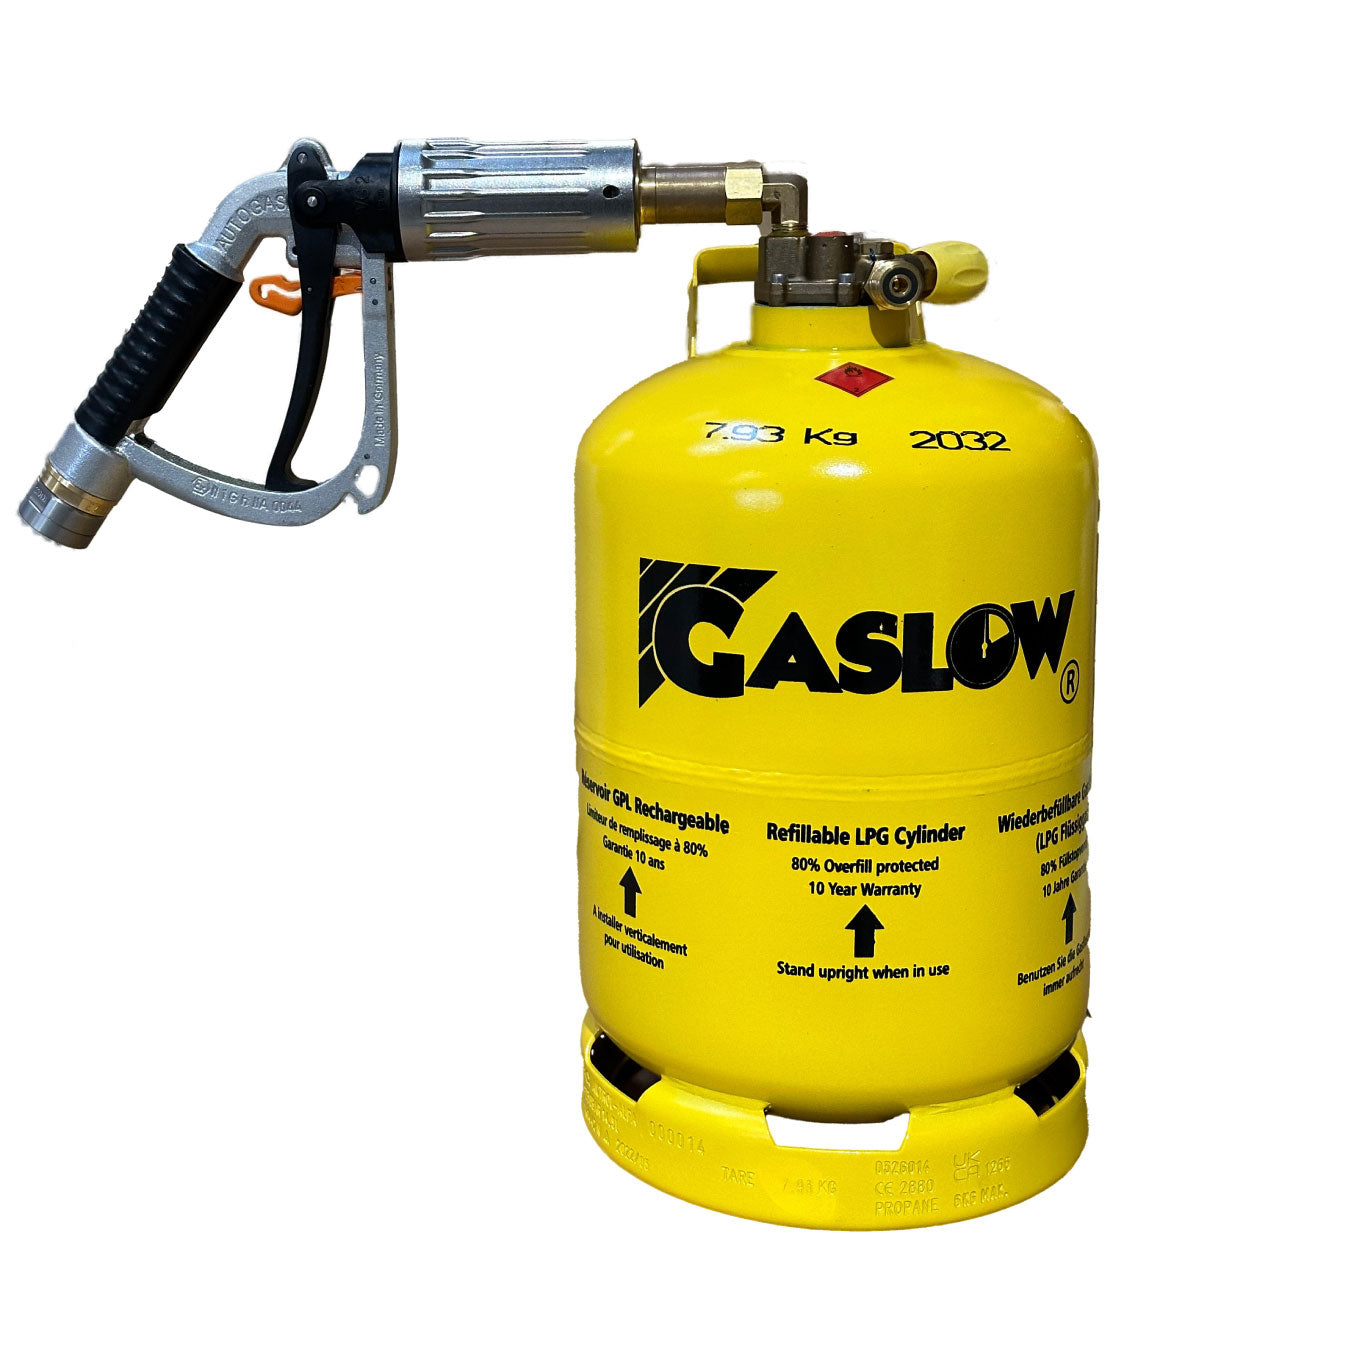 Gaslow 2.7Kg nachfüllbare LPG-Flasche R67-01 Zulassung